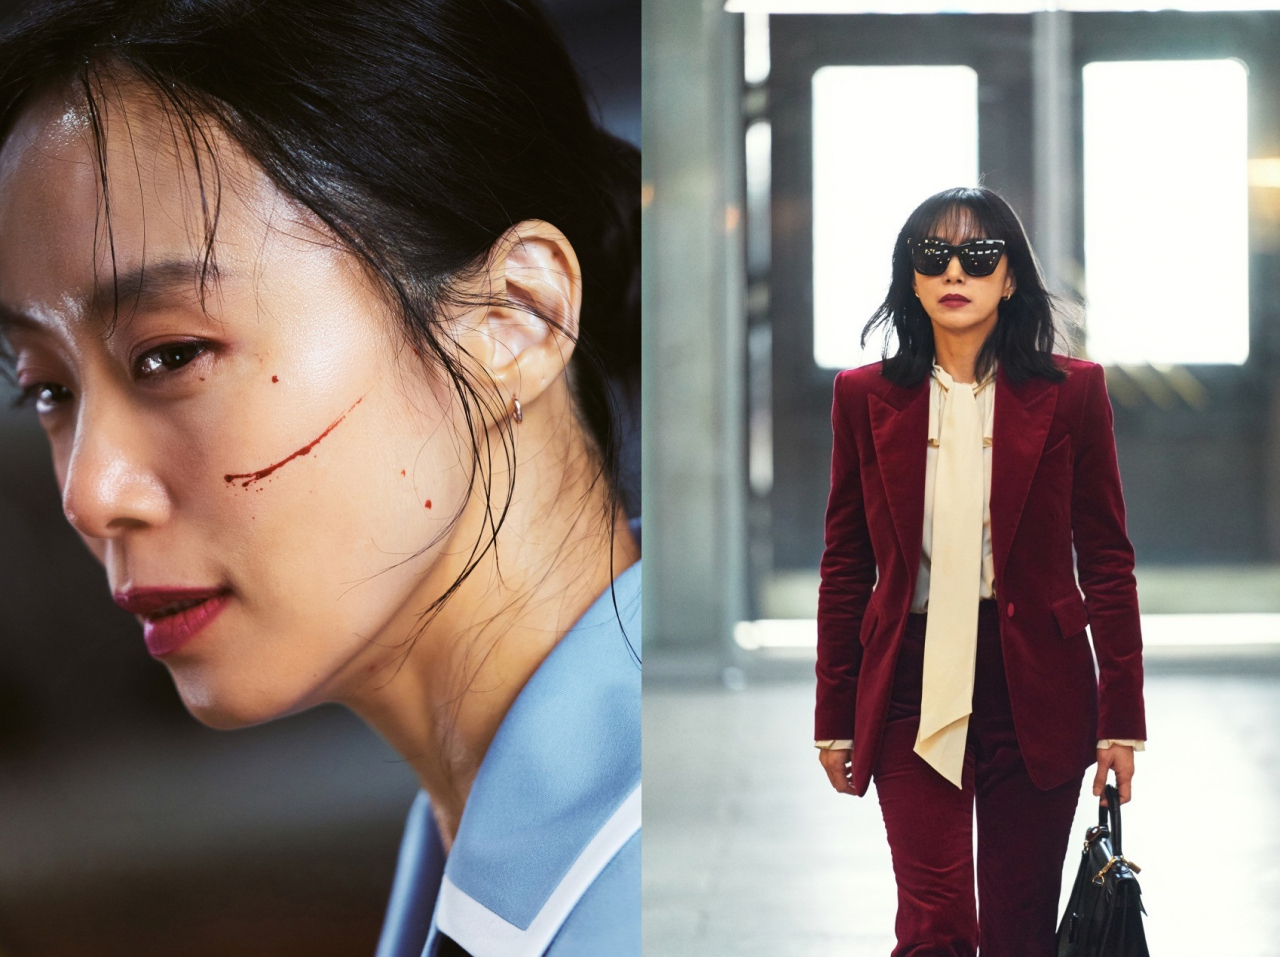 Jeon Do-yeon in “Kill Boksoon” (Netflix)